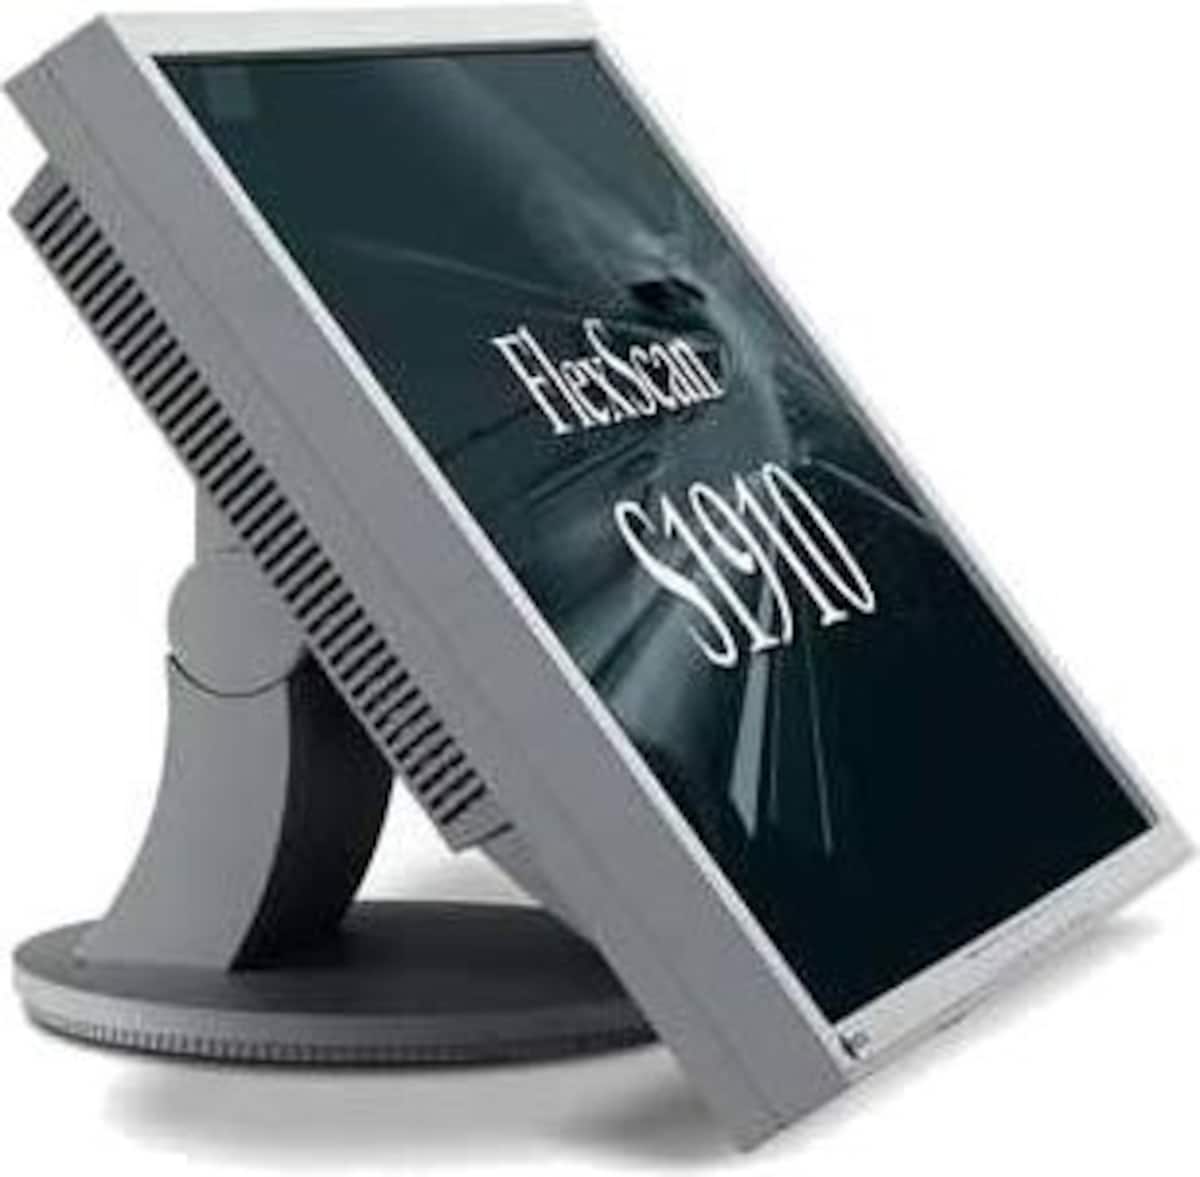 NANAO FlexScan 19インチ液晶ディスプレイ S1910-RGY セーレングレイ(ノングレアパネル, 1280×1024pixel, リサイクル対応)